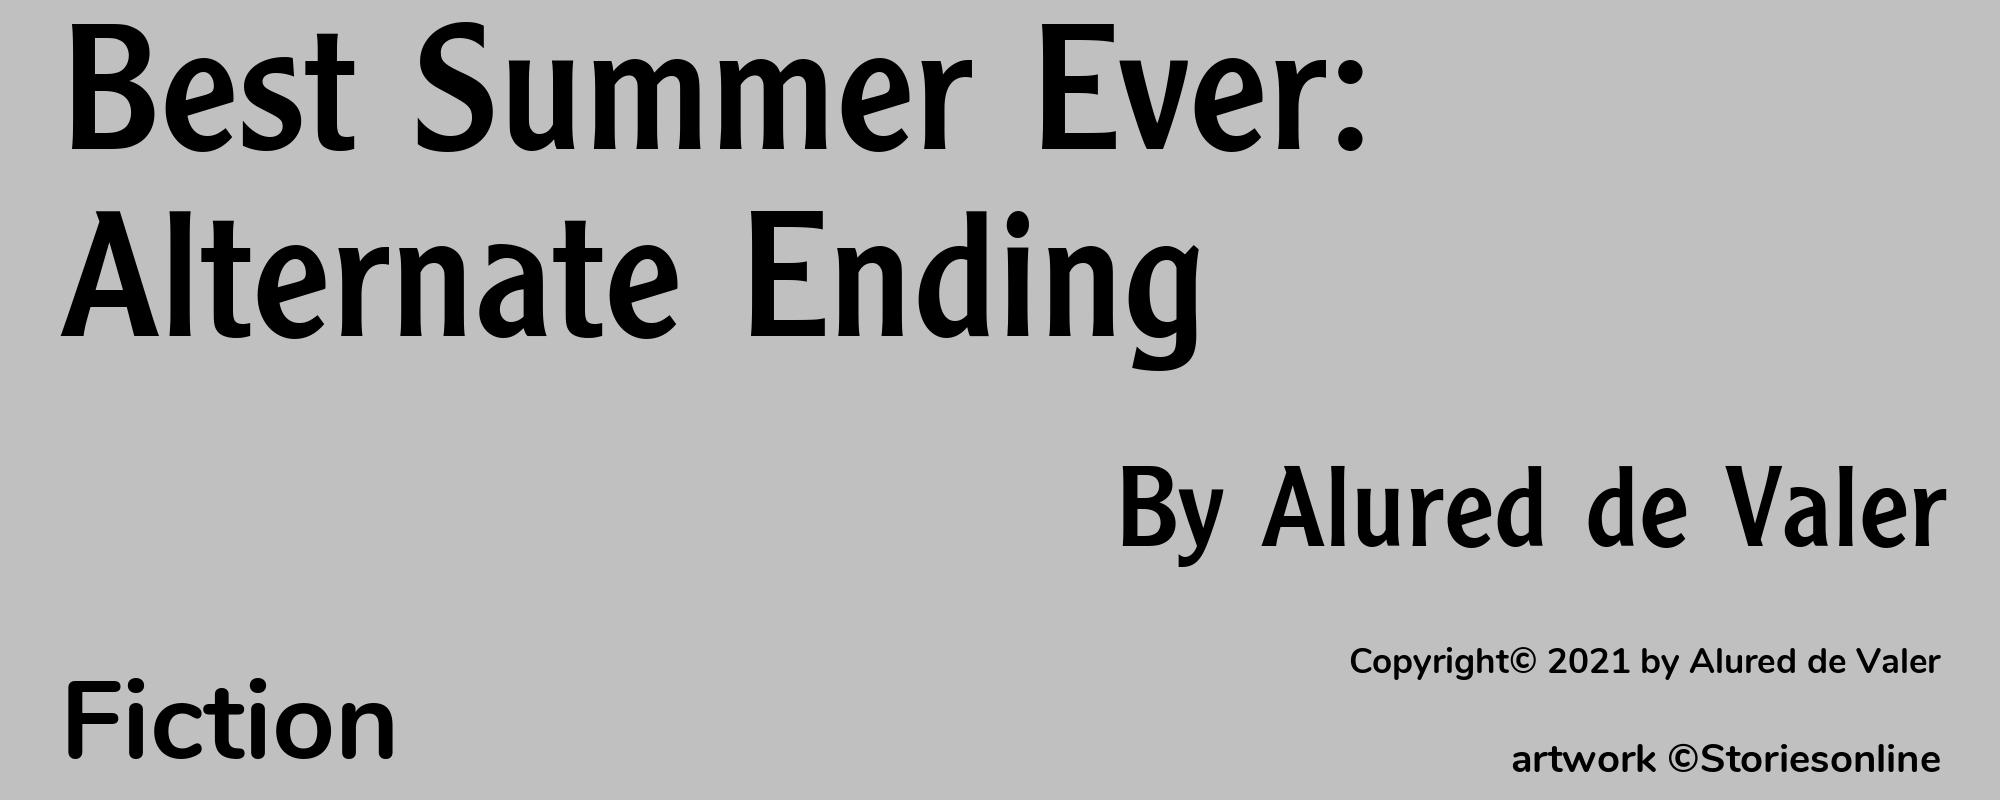 Best Summer Ever: Alternate Ending - Cover